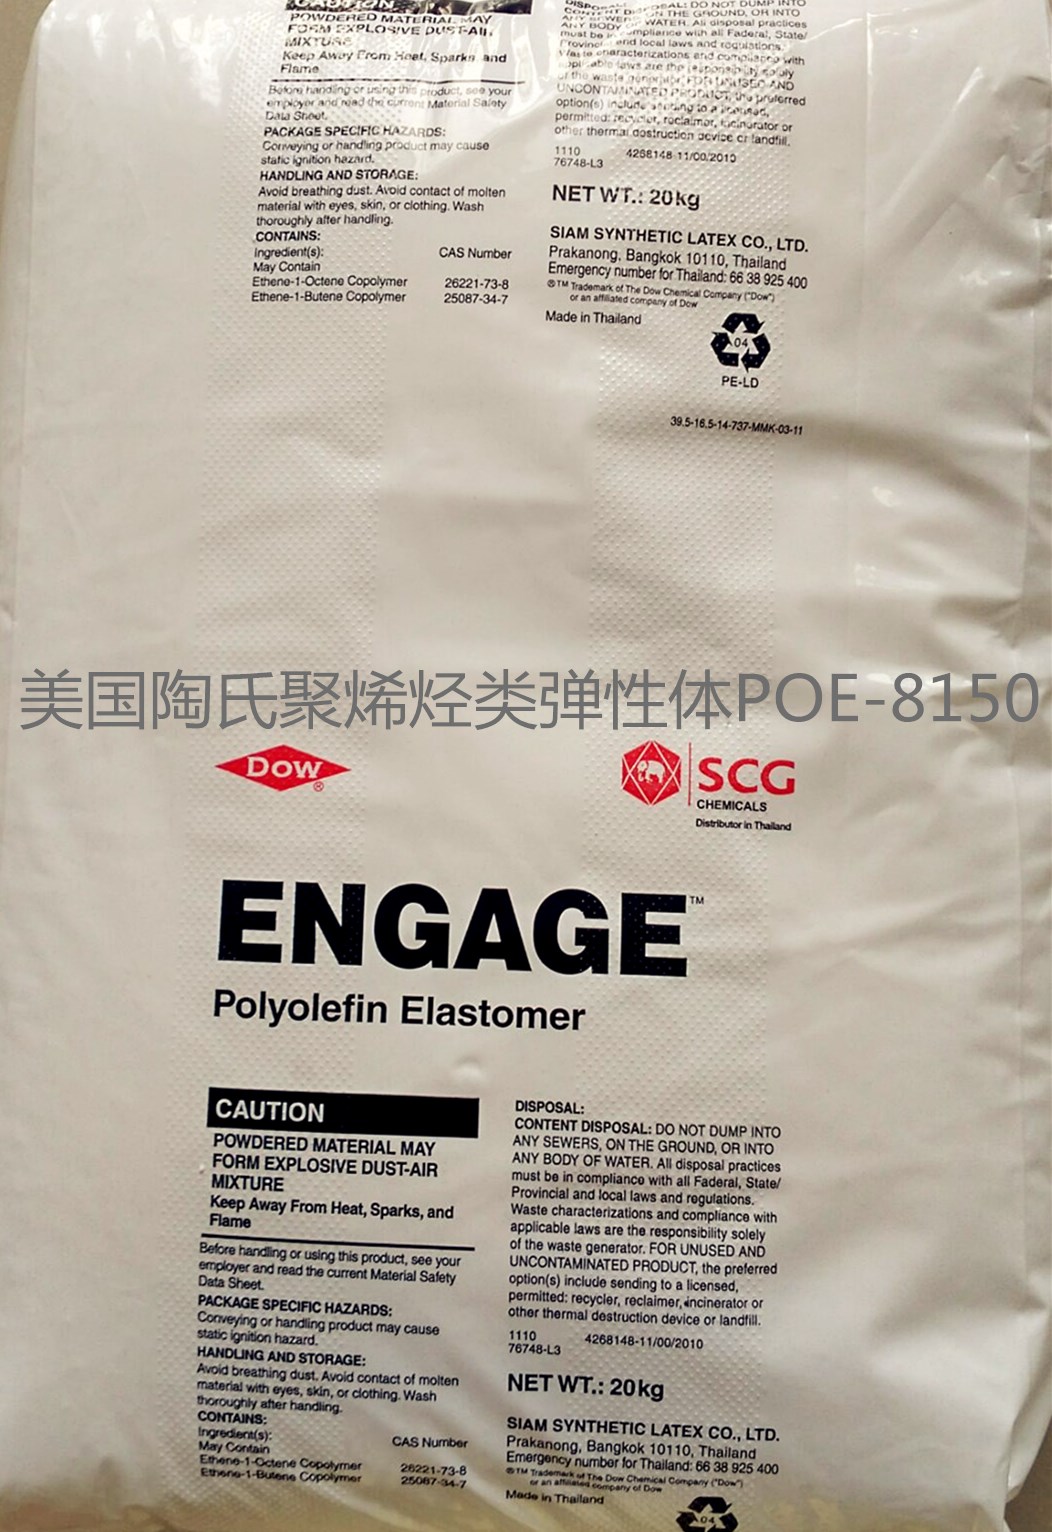 美国陶氏POE-8842系列产品/聚合物〔PP.PE.PA.ABS〕增韧剂